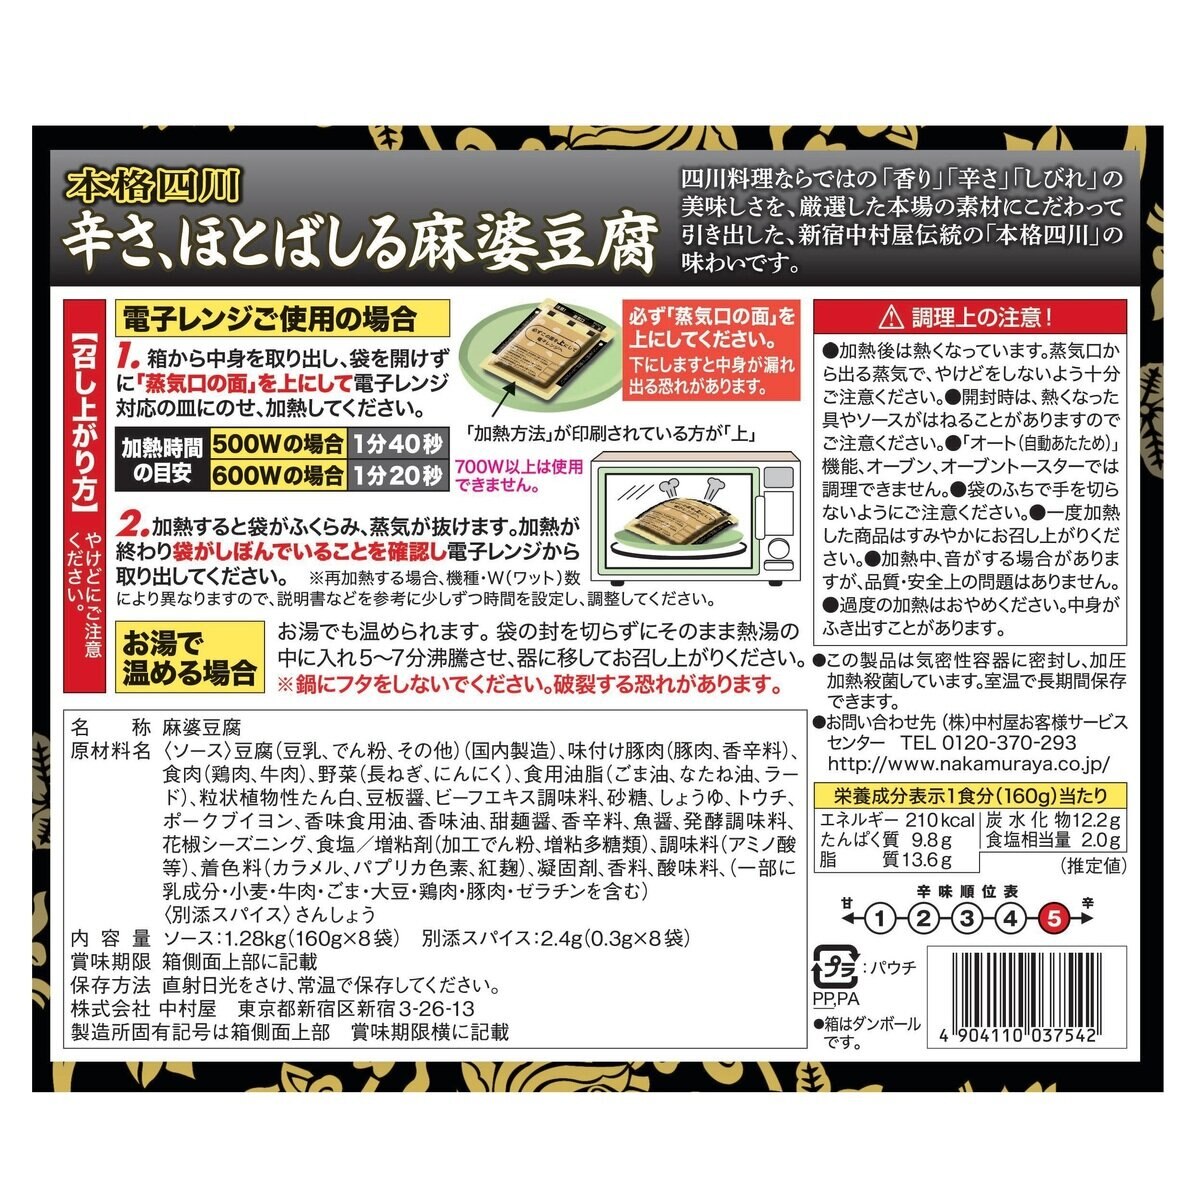 新宿中村屋 辛さ、ほとばしる麻婆豆腐 160g x 8袋